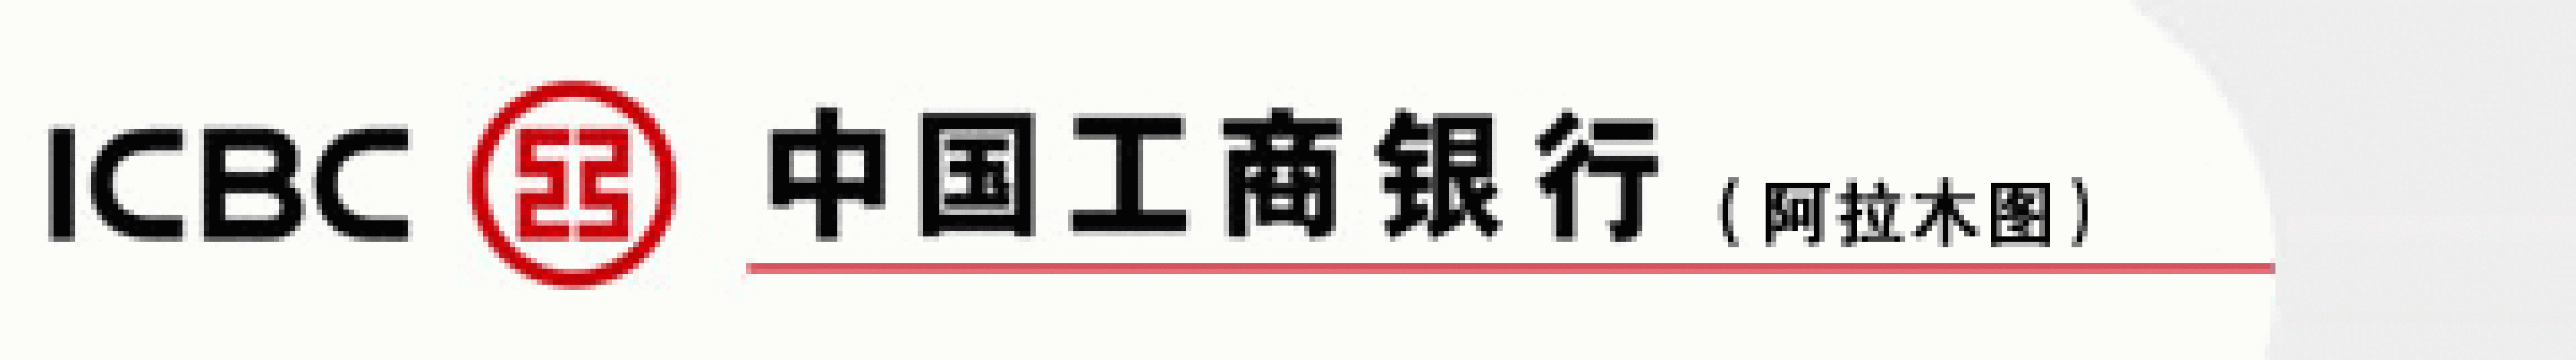 Платежи в bank of china. Торгово-промышленный банк Китая logo. АЙСИБИСИ банк. ICBC логотип. АЙСИБИСИ банк лого.